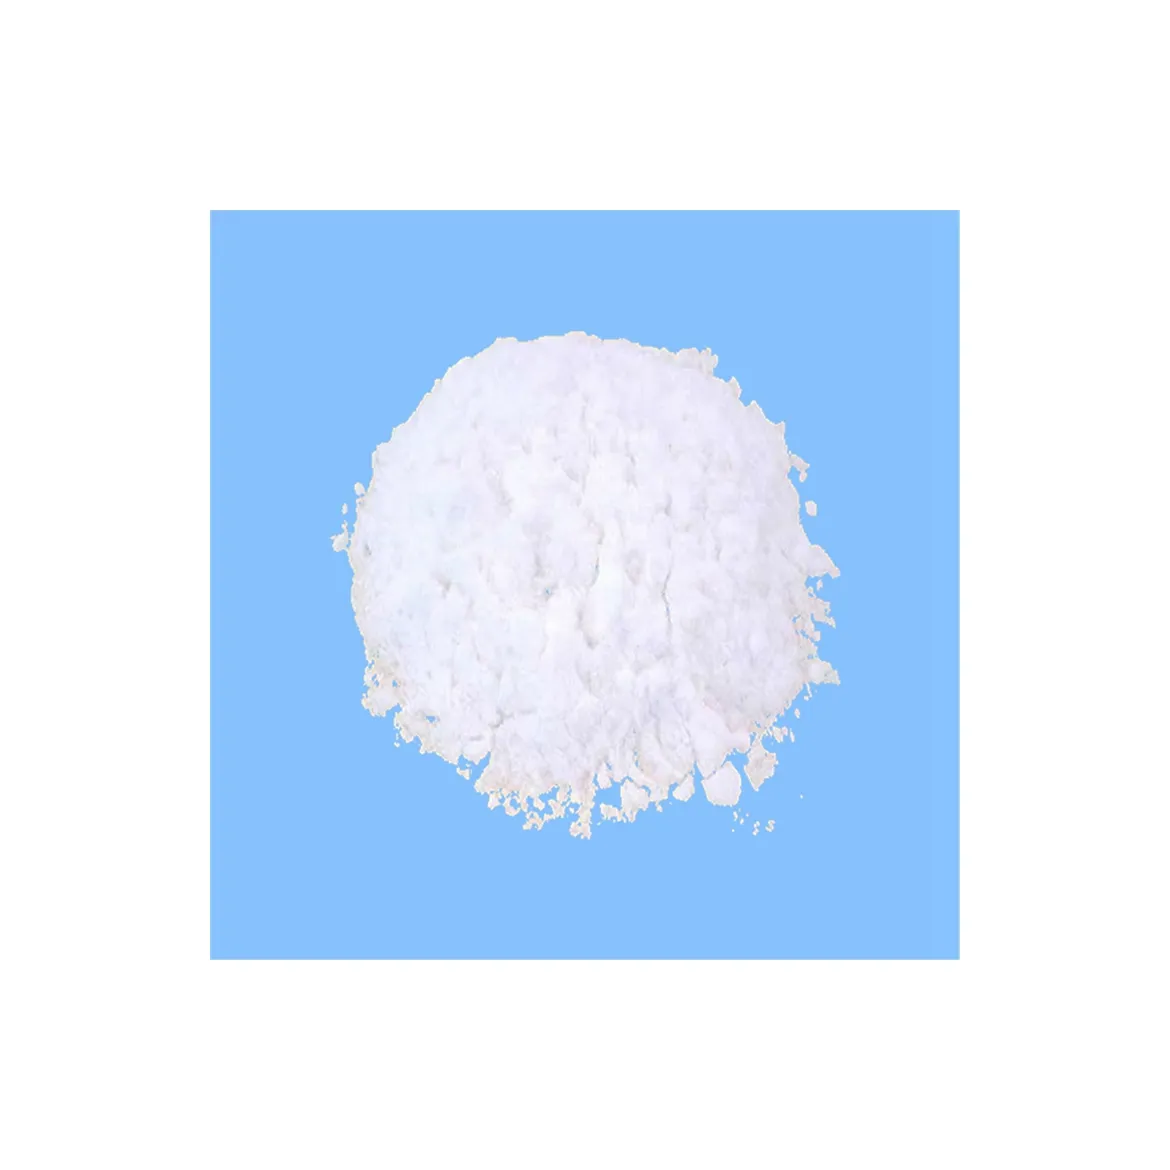 En satış garantili kalite popüler ürün beyaz toz inorganik magnezyum karbonat için özel kauçuk bileşik